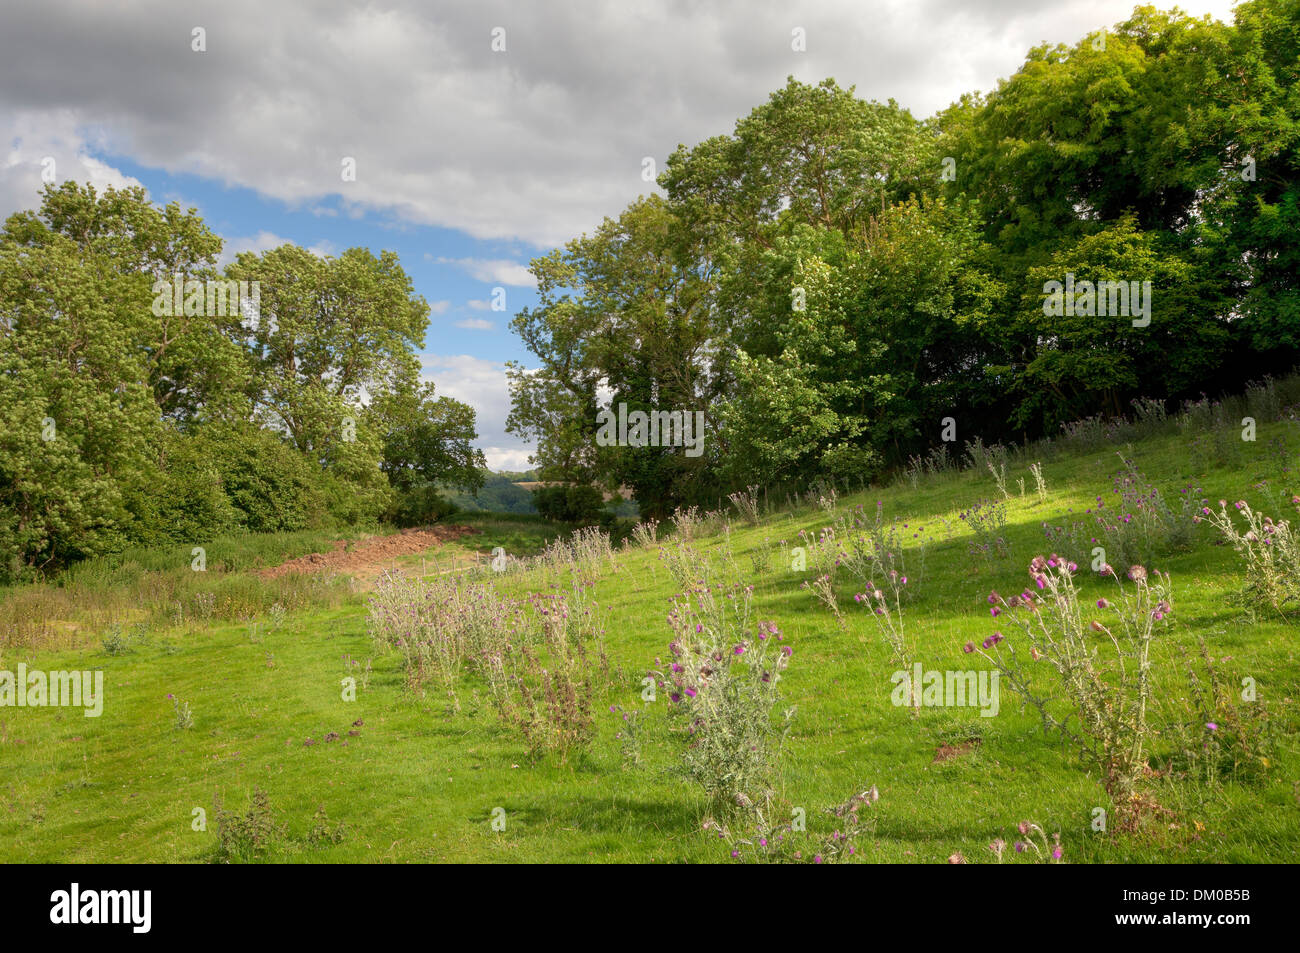 Campagna inglese con alberi di quercia e cardi, Gloucestershire, Inghilterra. Foto Stock